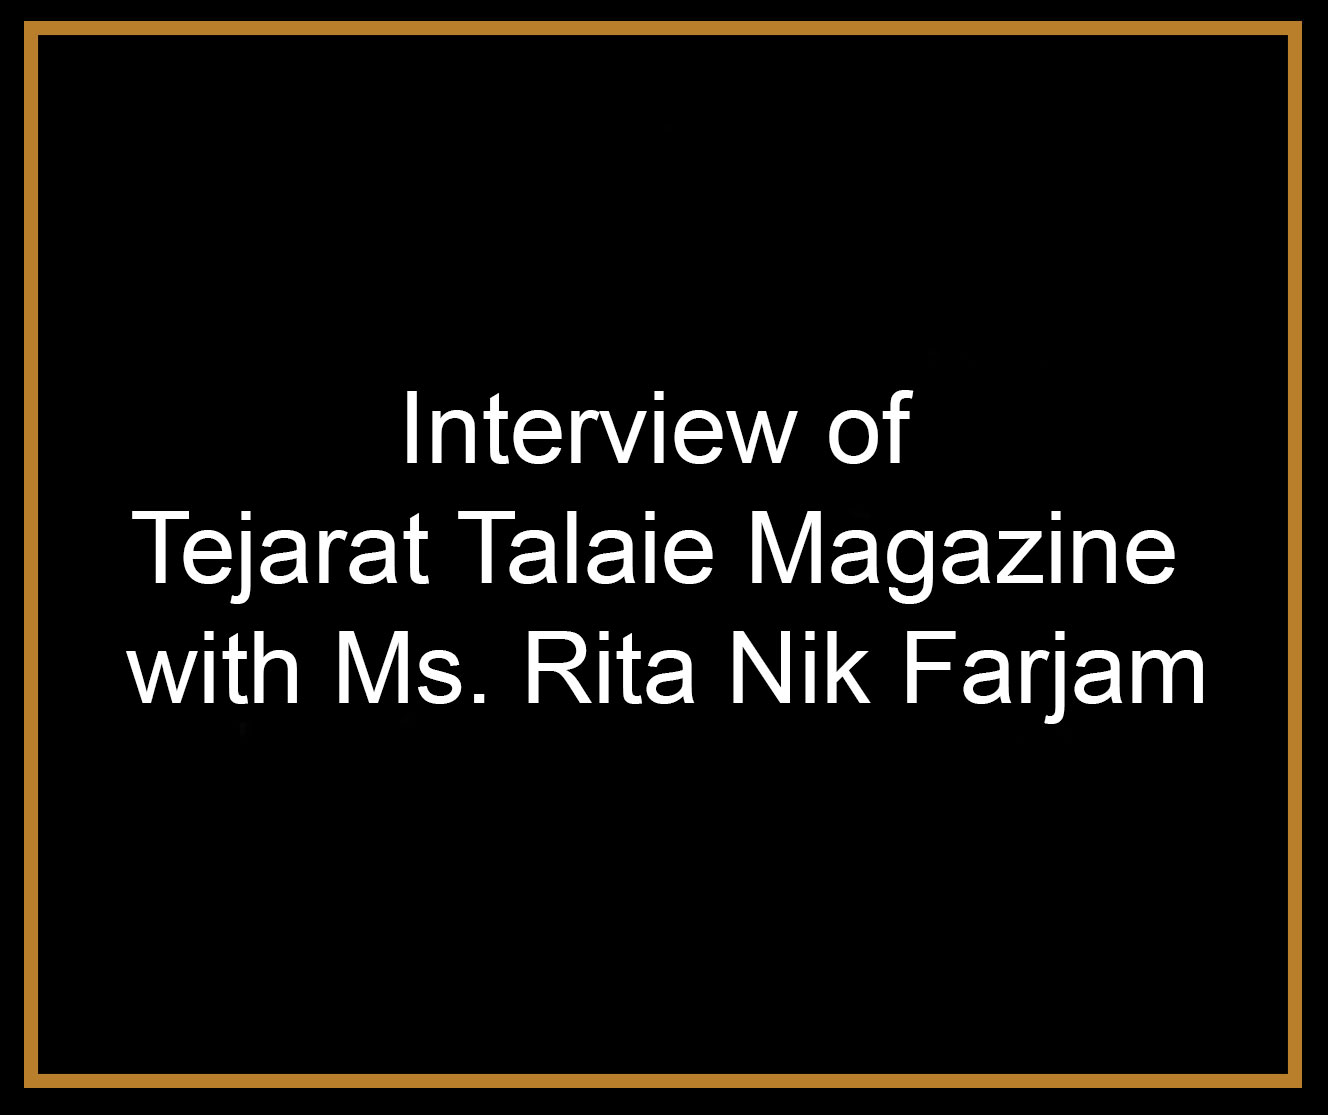 Interview of Tejarat Talaie Magazine with Ms. Rita Nik Farjam